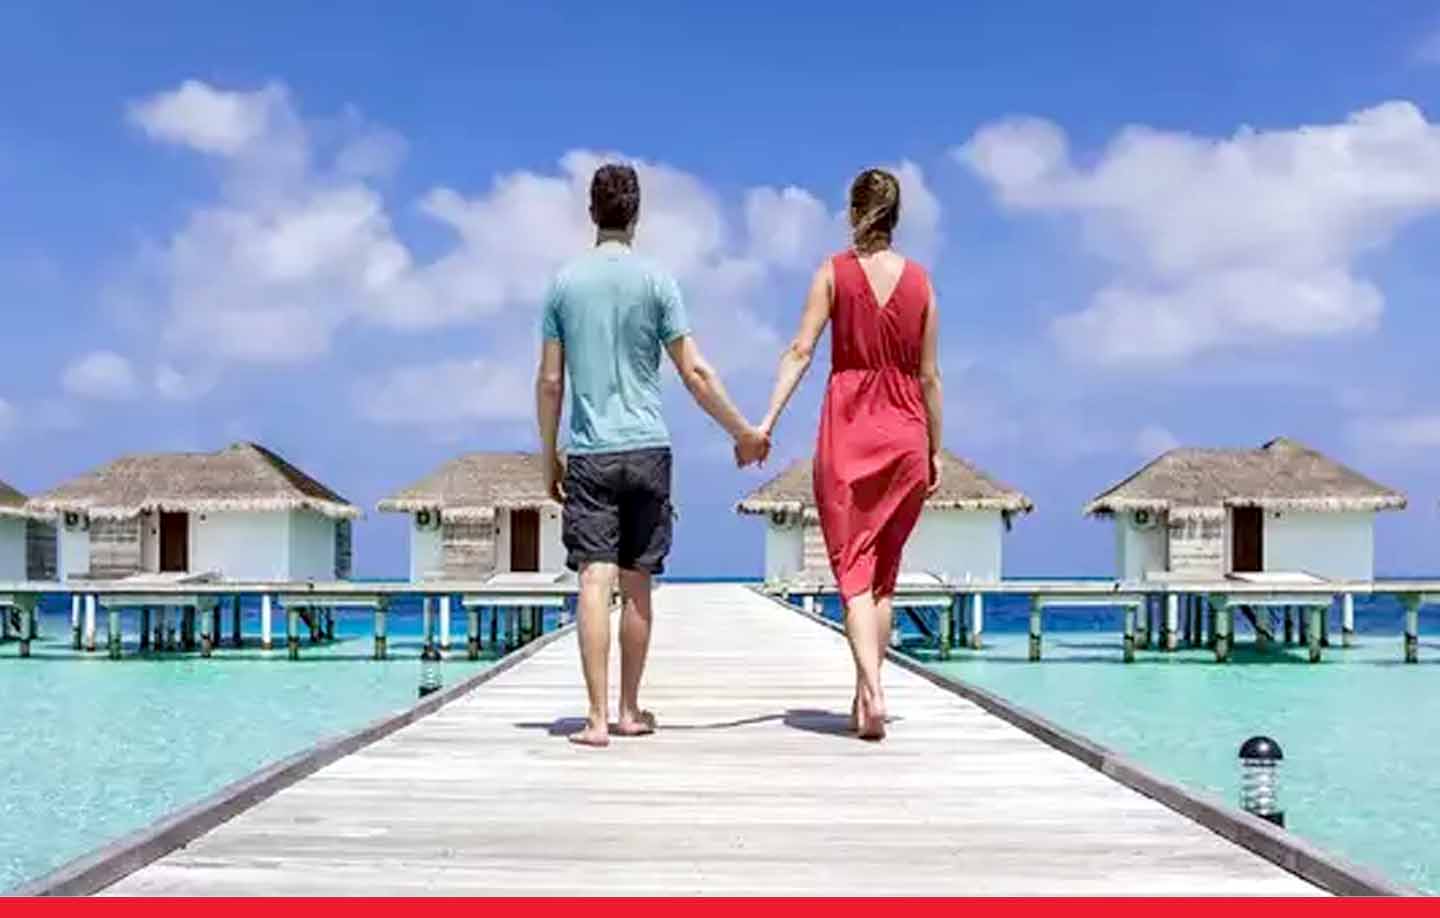 बॉलीवुड स्टार्स की फेवरेट जगह है मालदीव, जानिए घूमने में कितना आएगा खर्च